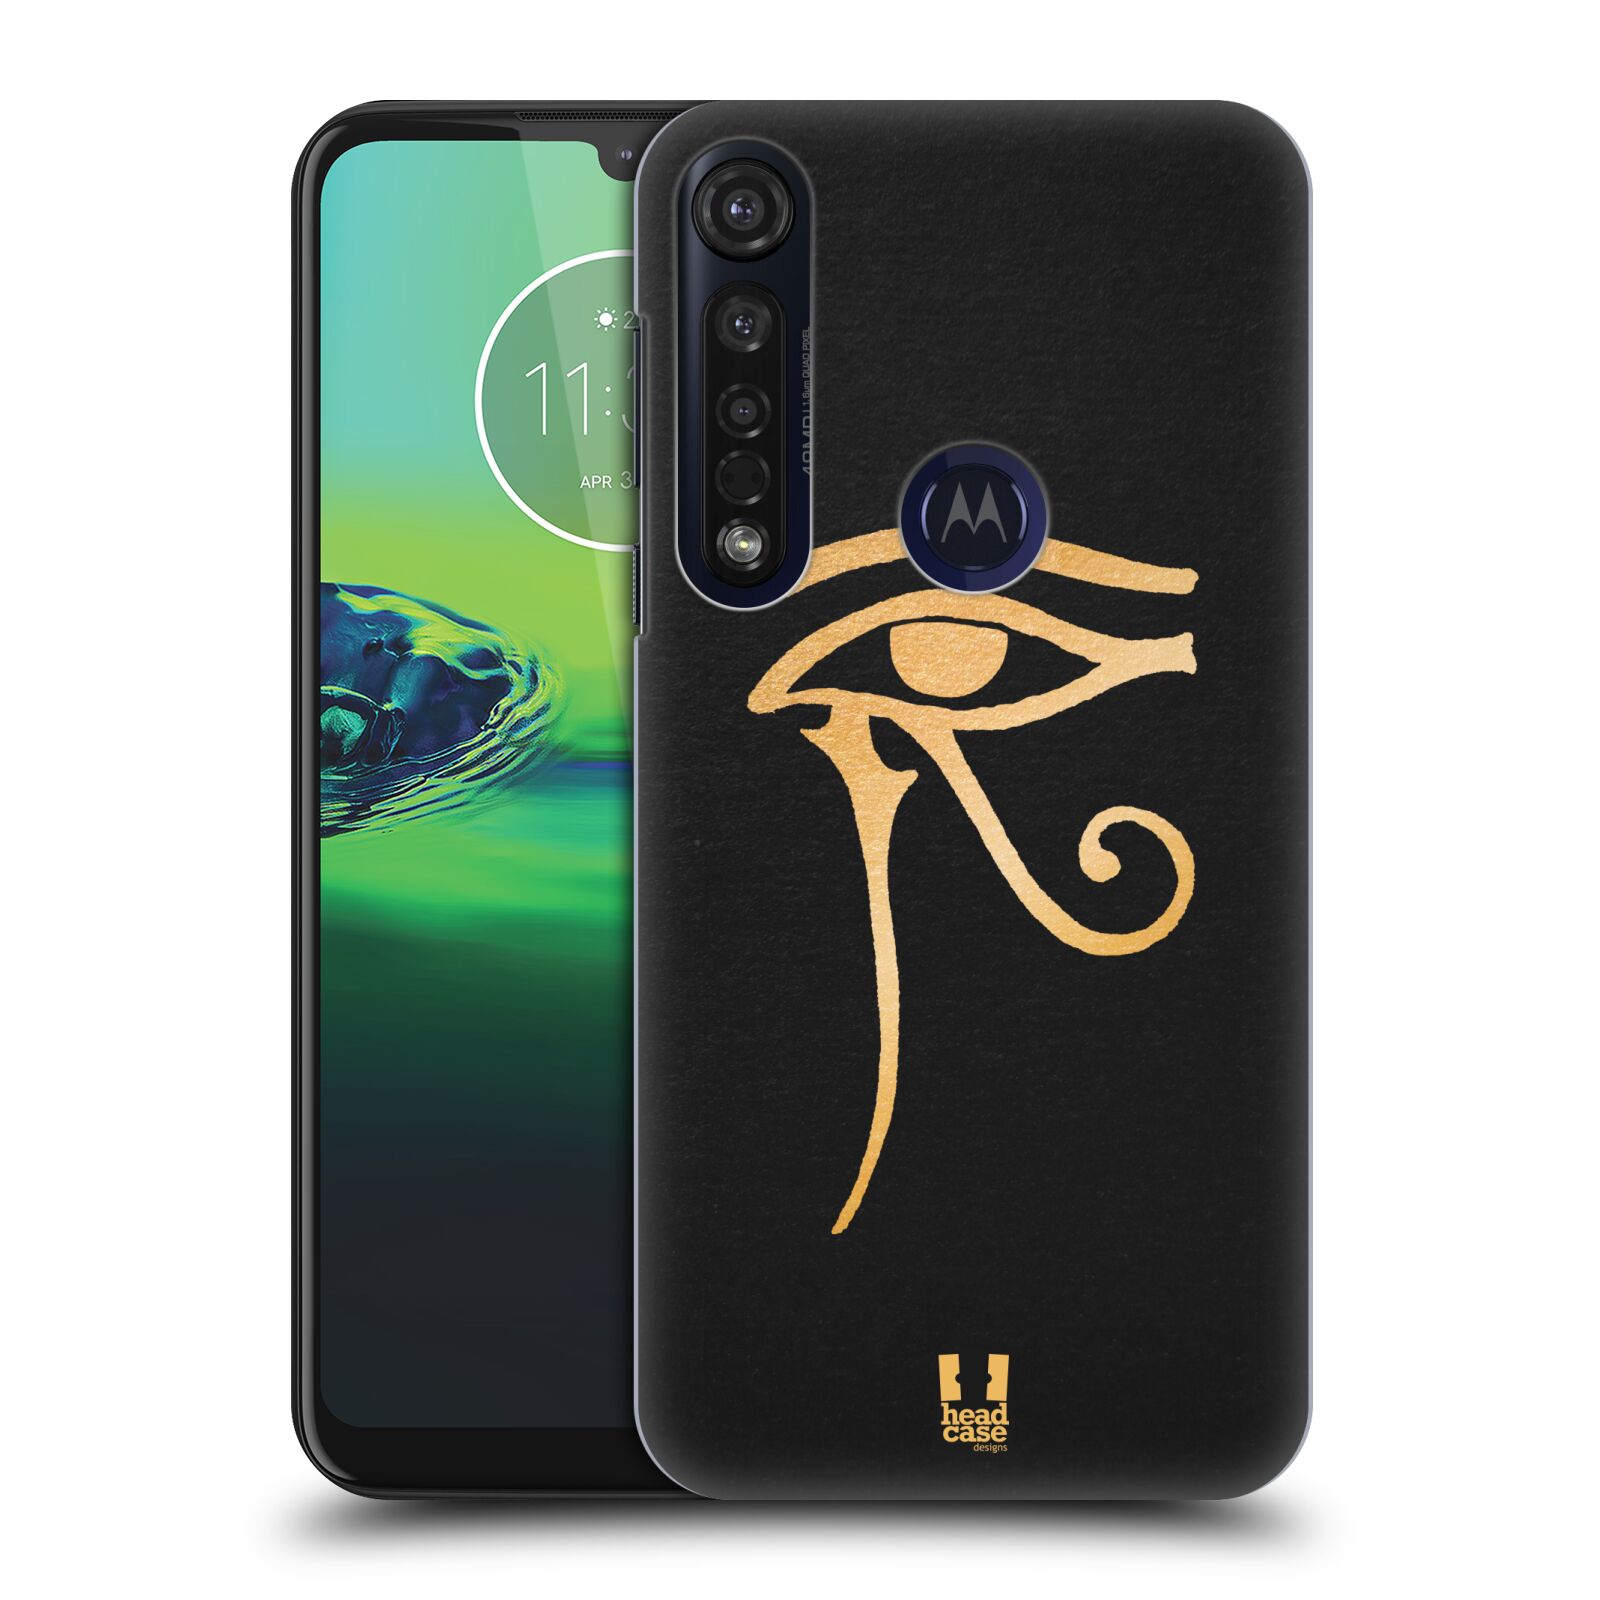 Pouzdro na mobil Motorola Moto G8 PLUS - HEAD CASE - vzor EGYPT zlatá a černá OKO